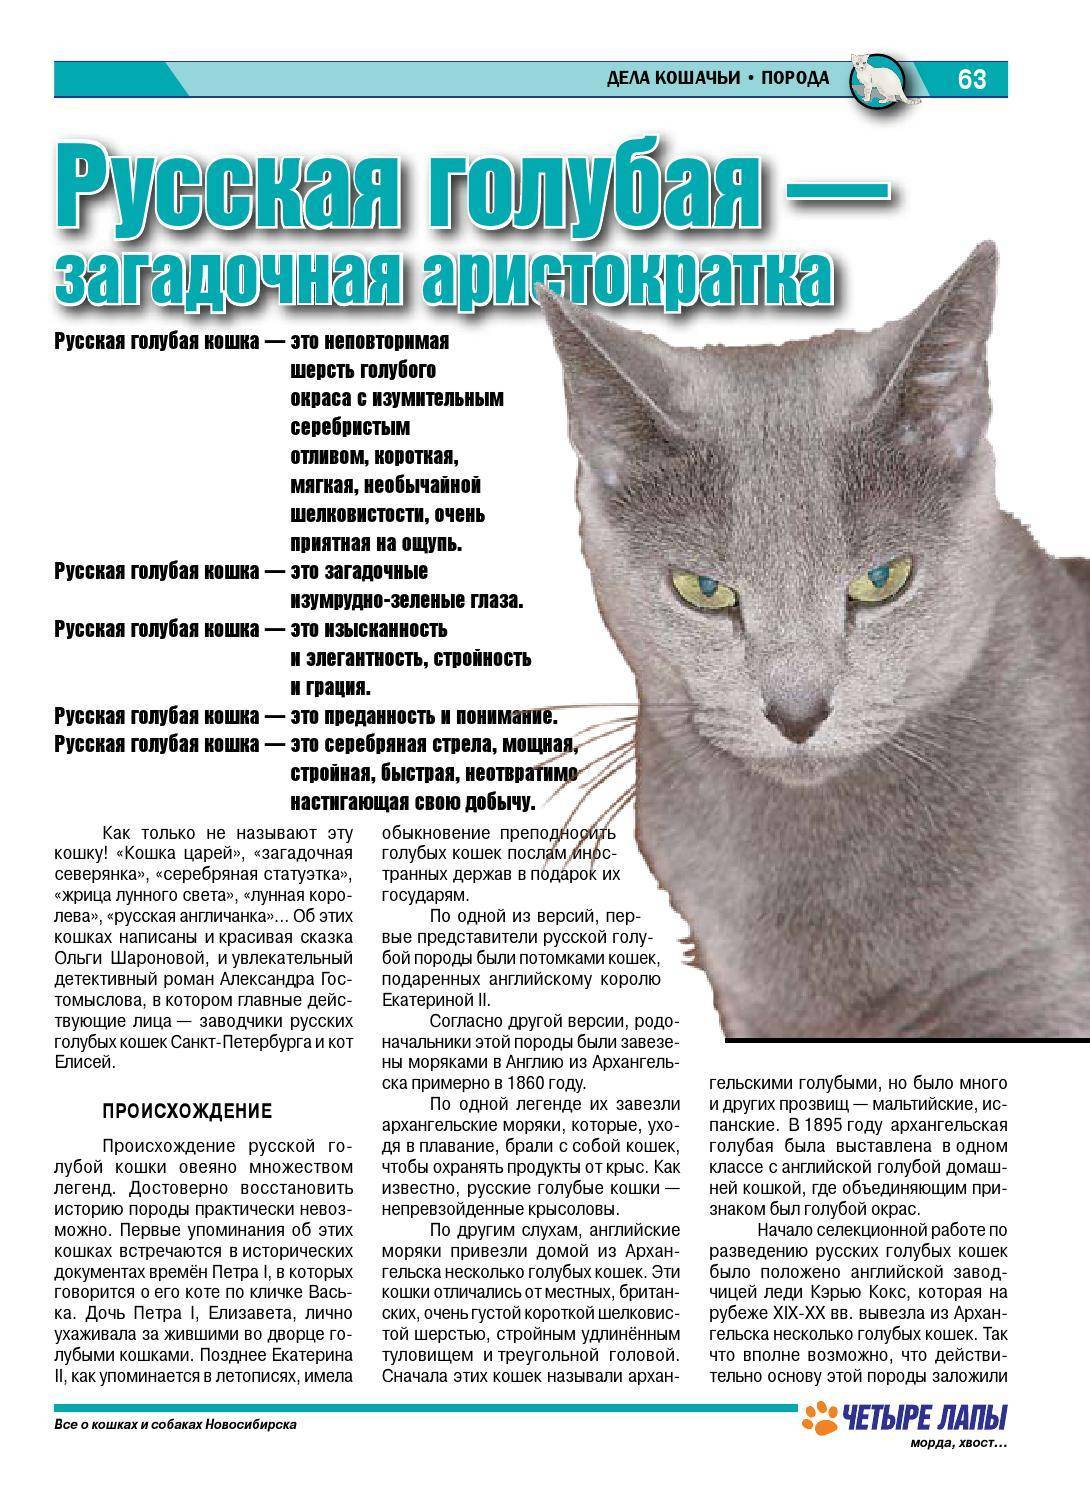 Подробное описание русской голубой кошки